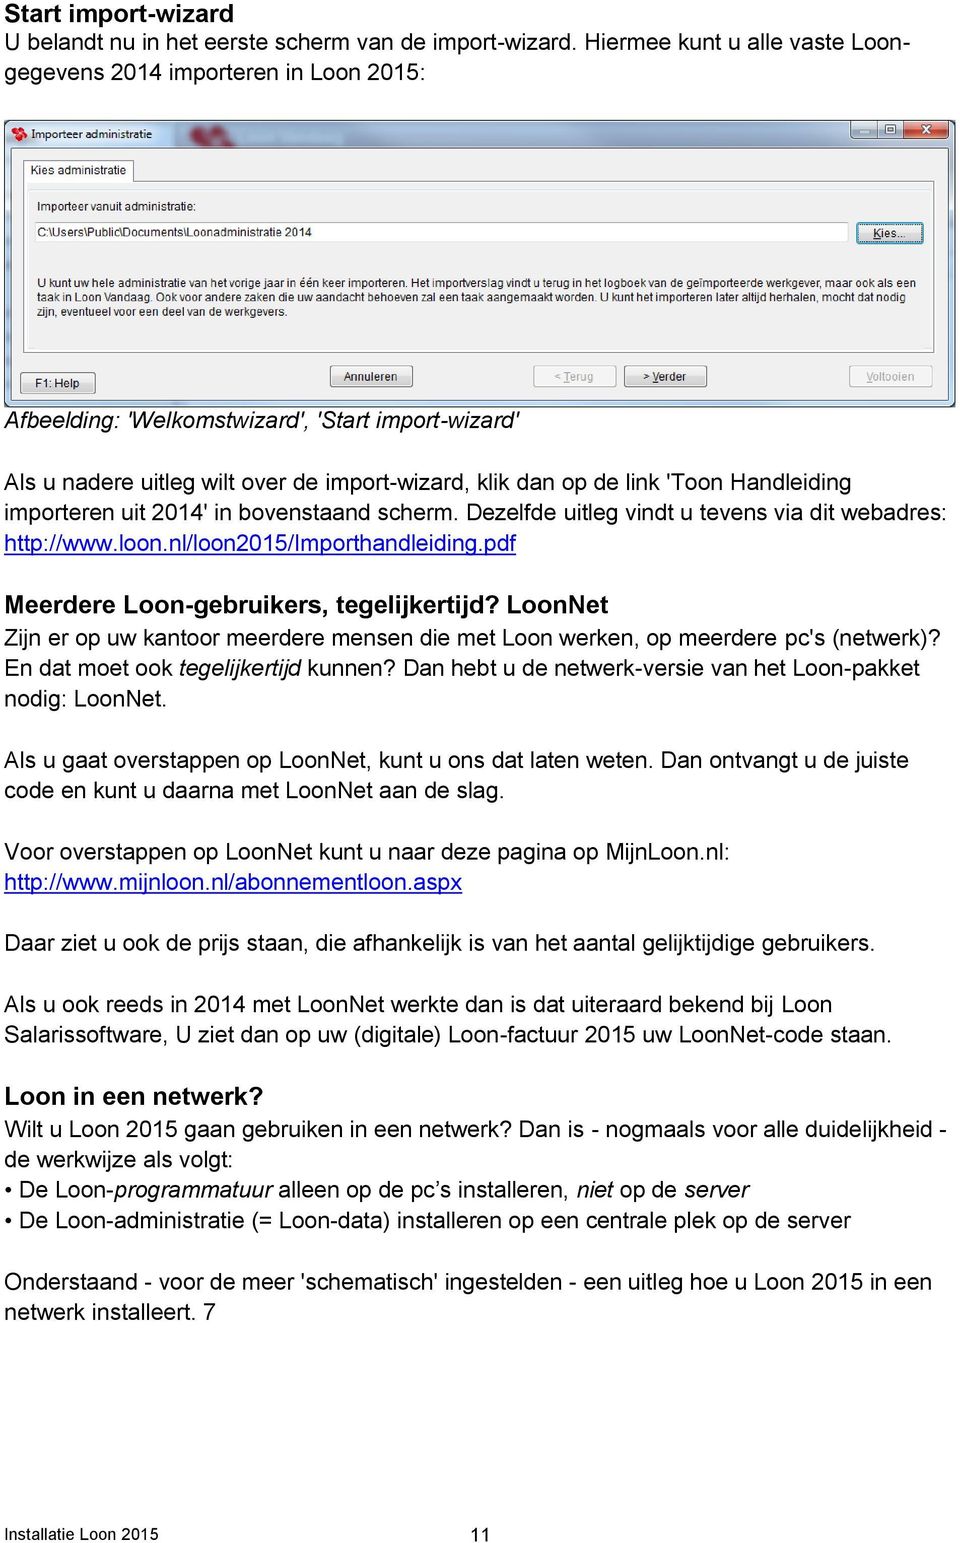 Handleiding importeren uit 2014' in bovenstaand scherm. Dezelfde uitleg vindt u tevens via dit webadres: http://www.loon.nl/loon2015/importhandleiding.pdf Meerdere Loon-gebruikers, tegelijkertijd?